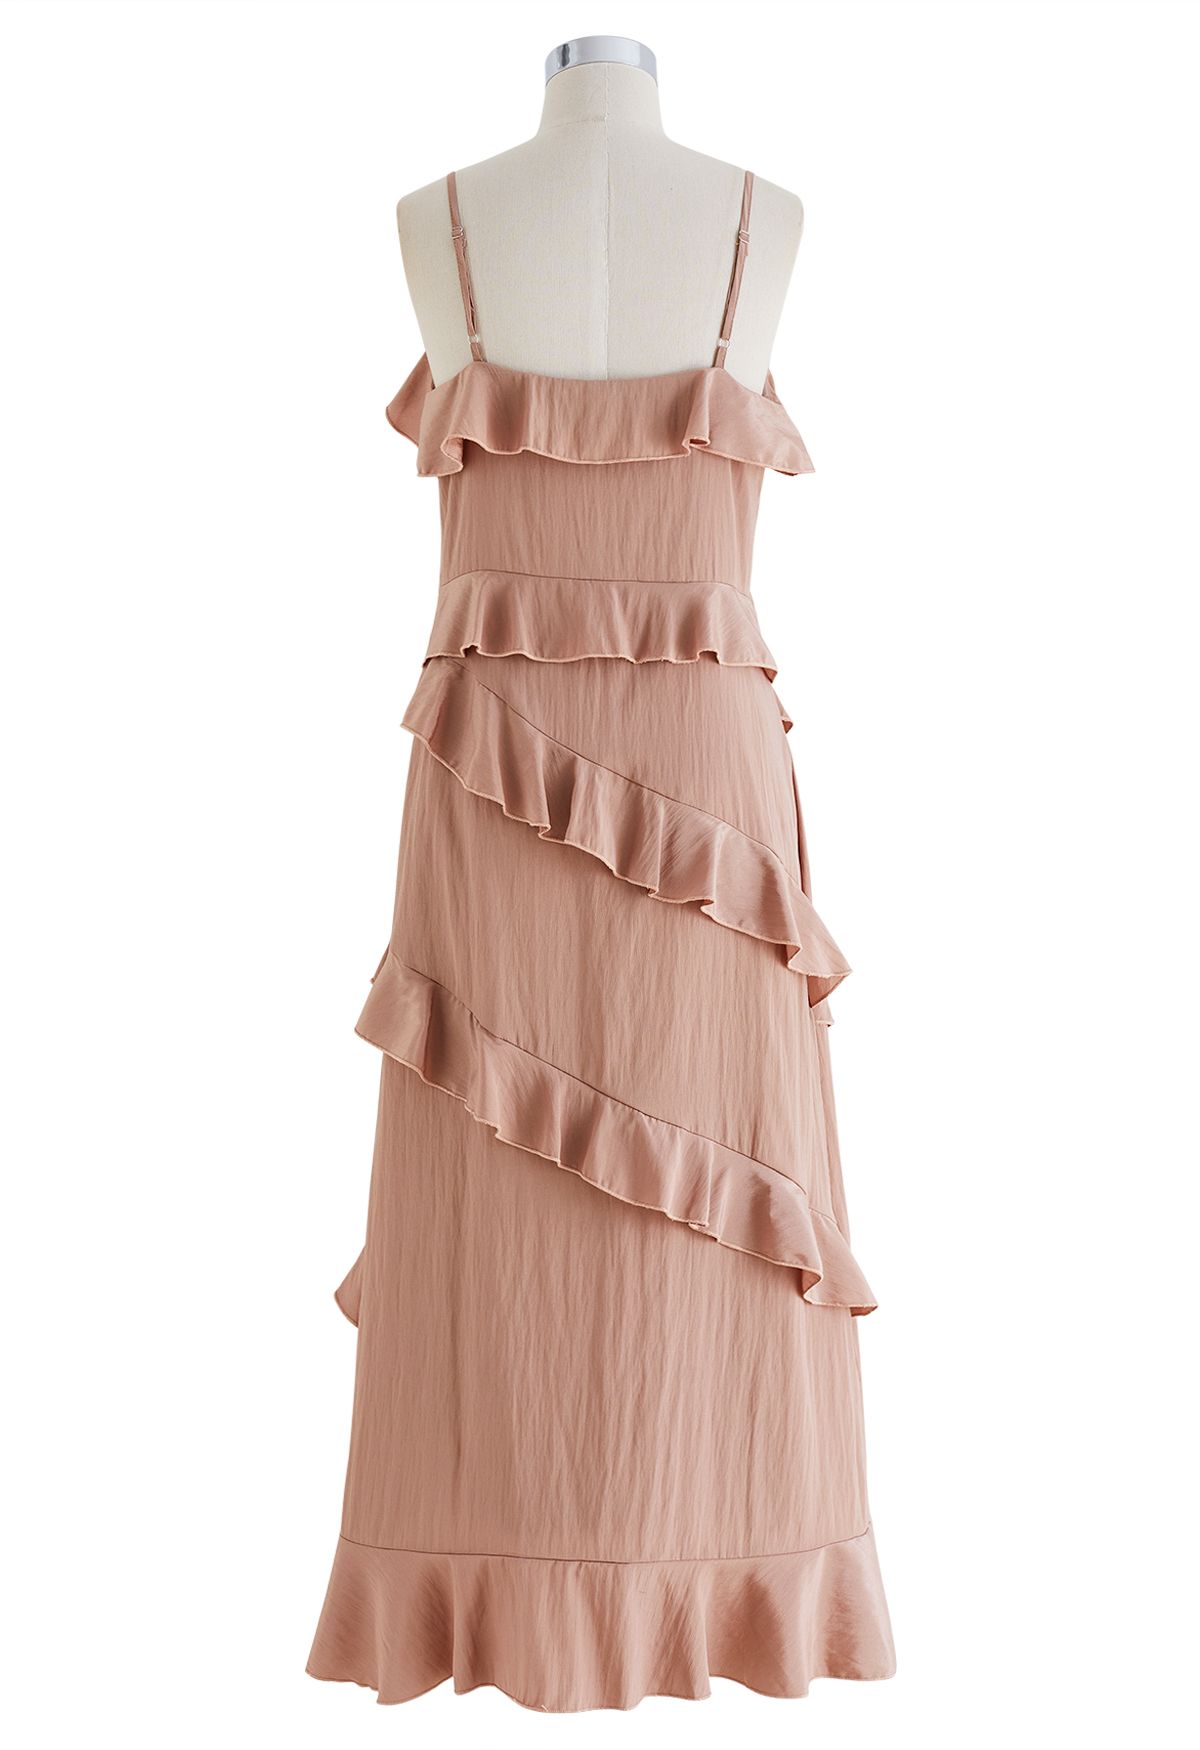 Gestuftes Cami-Kleid mit Rüschen und seitlichem Schlitz in Rosa